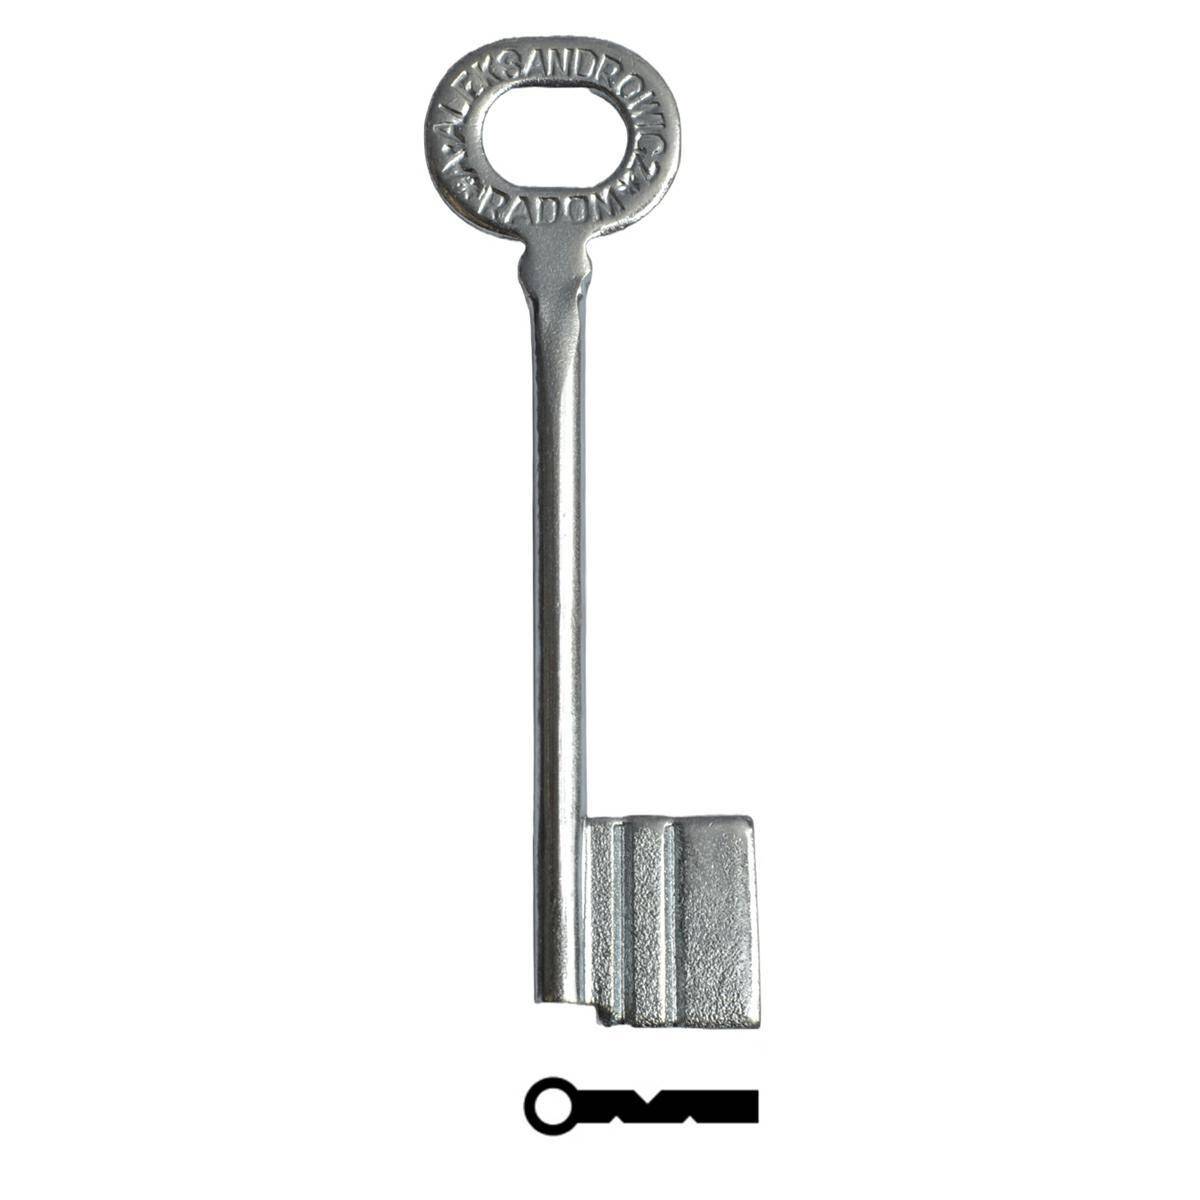 Key for Radom lock